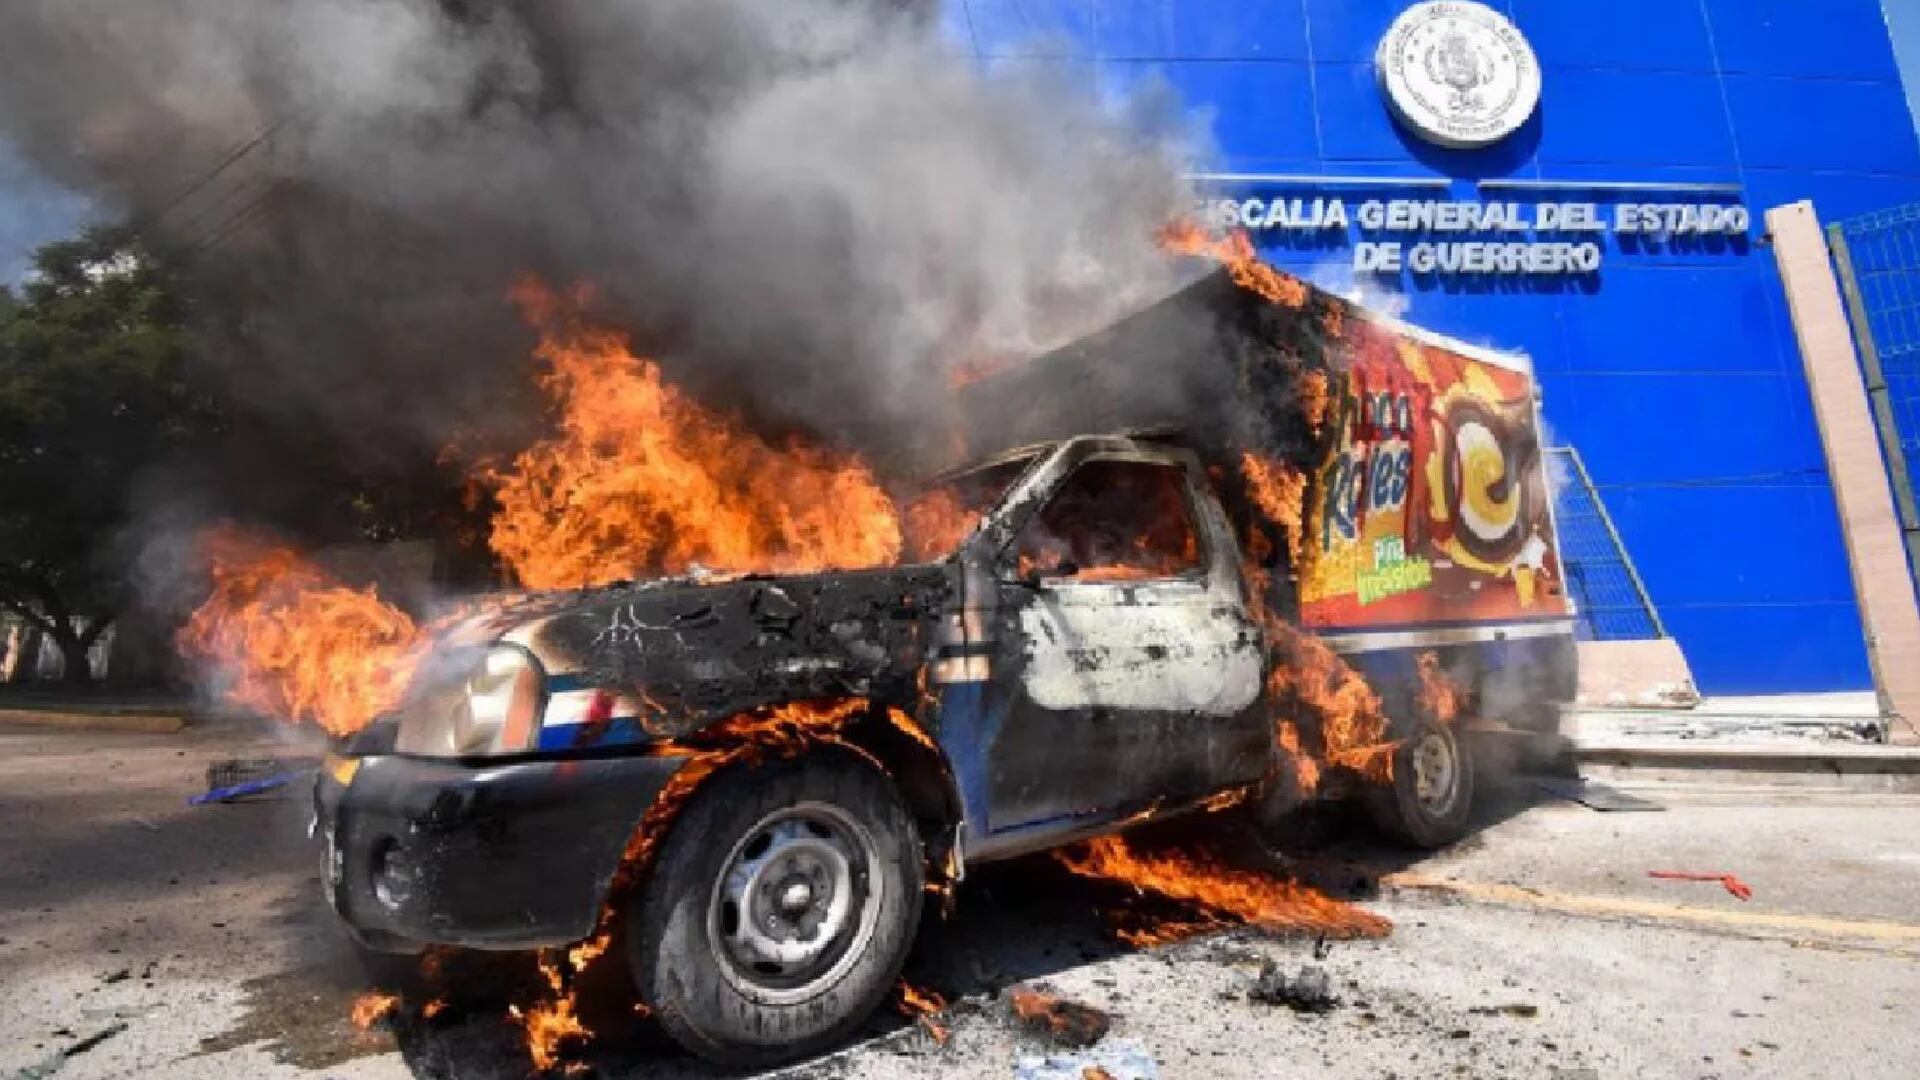 Presuntos normalistas atacaron la Fiscalía de Guerrero con petardos y una camioneta incendiada